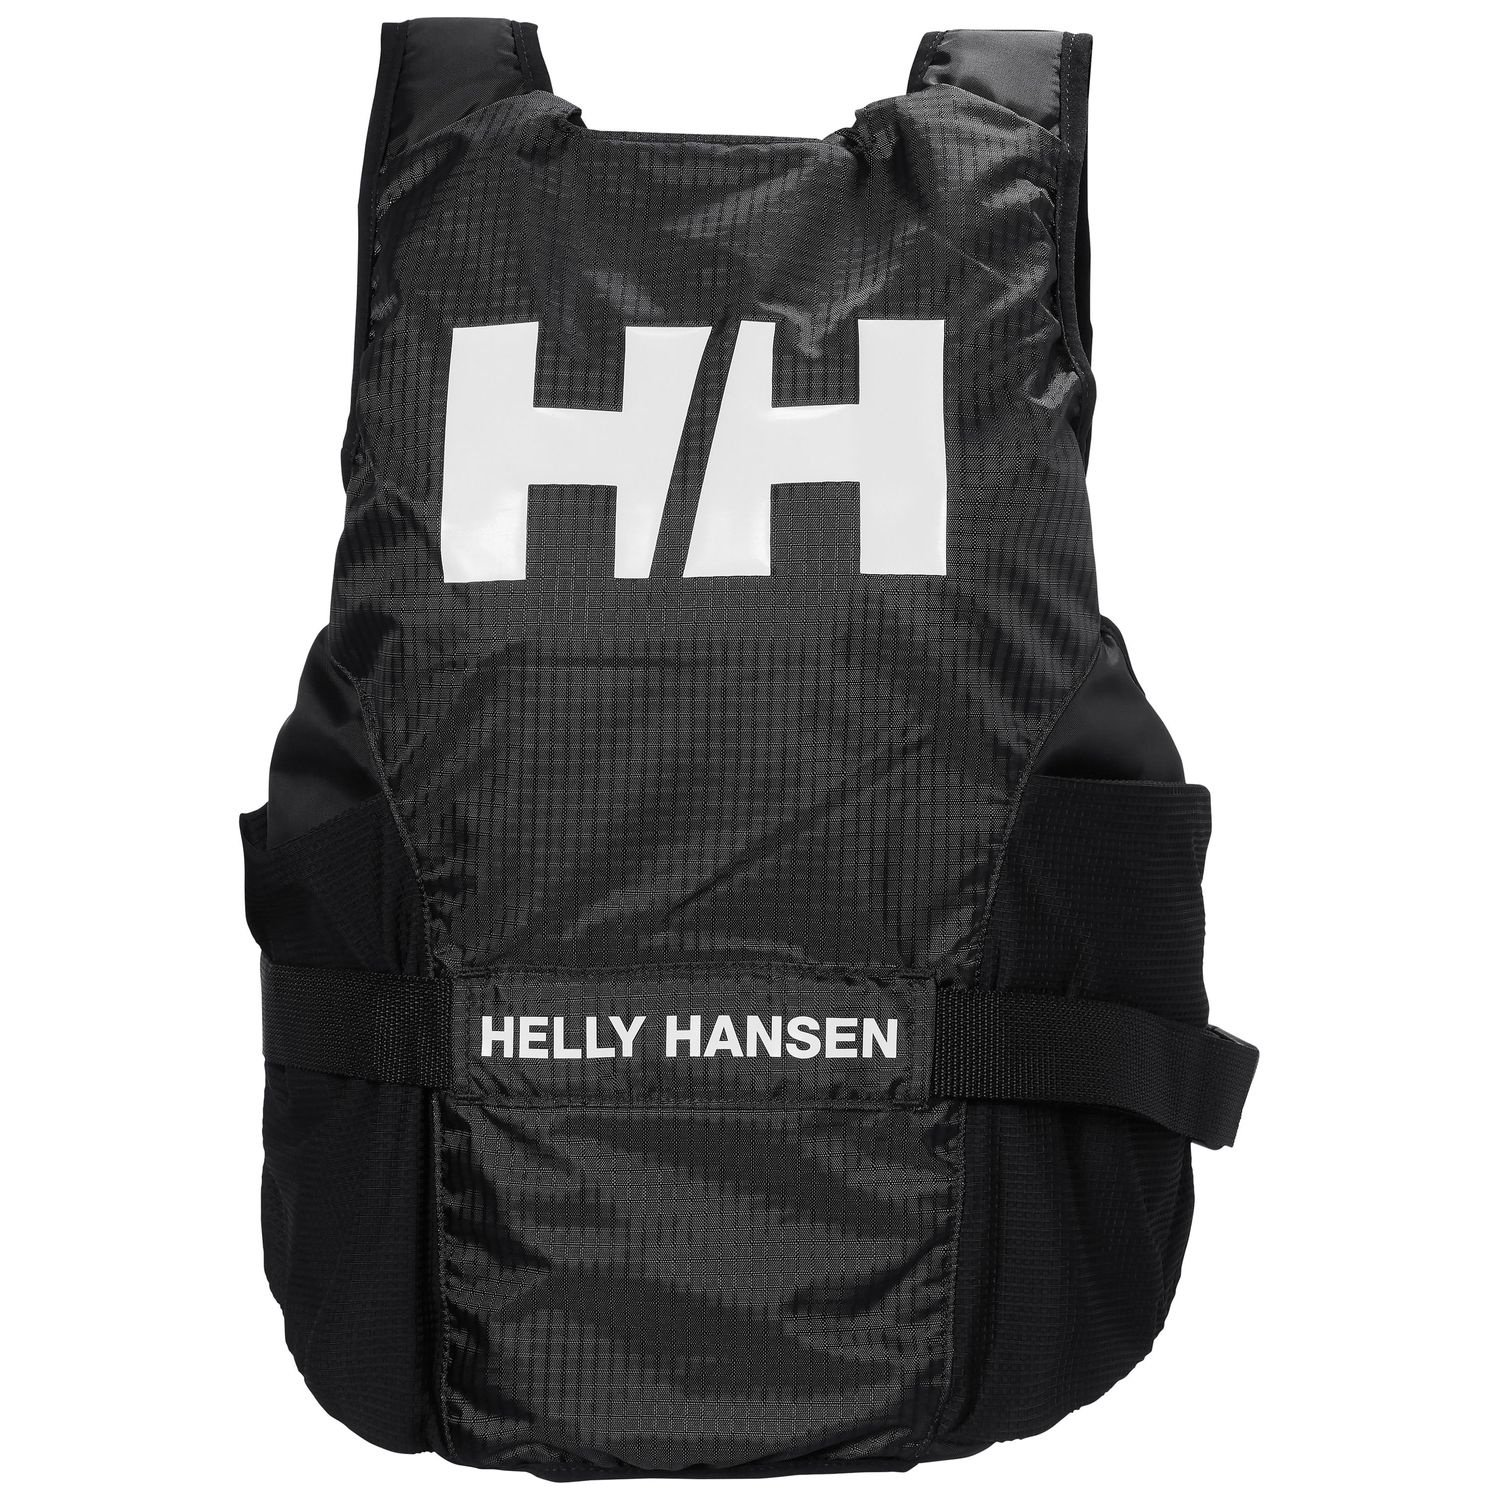 Helly Hansen Rider Foil Race Flytväst Svart